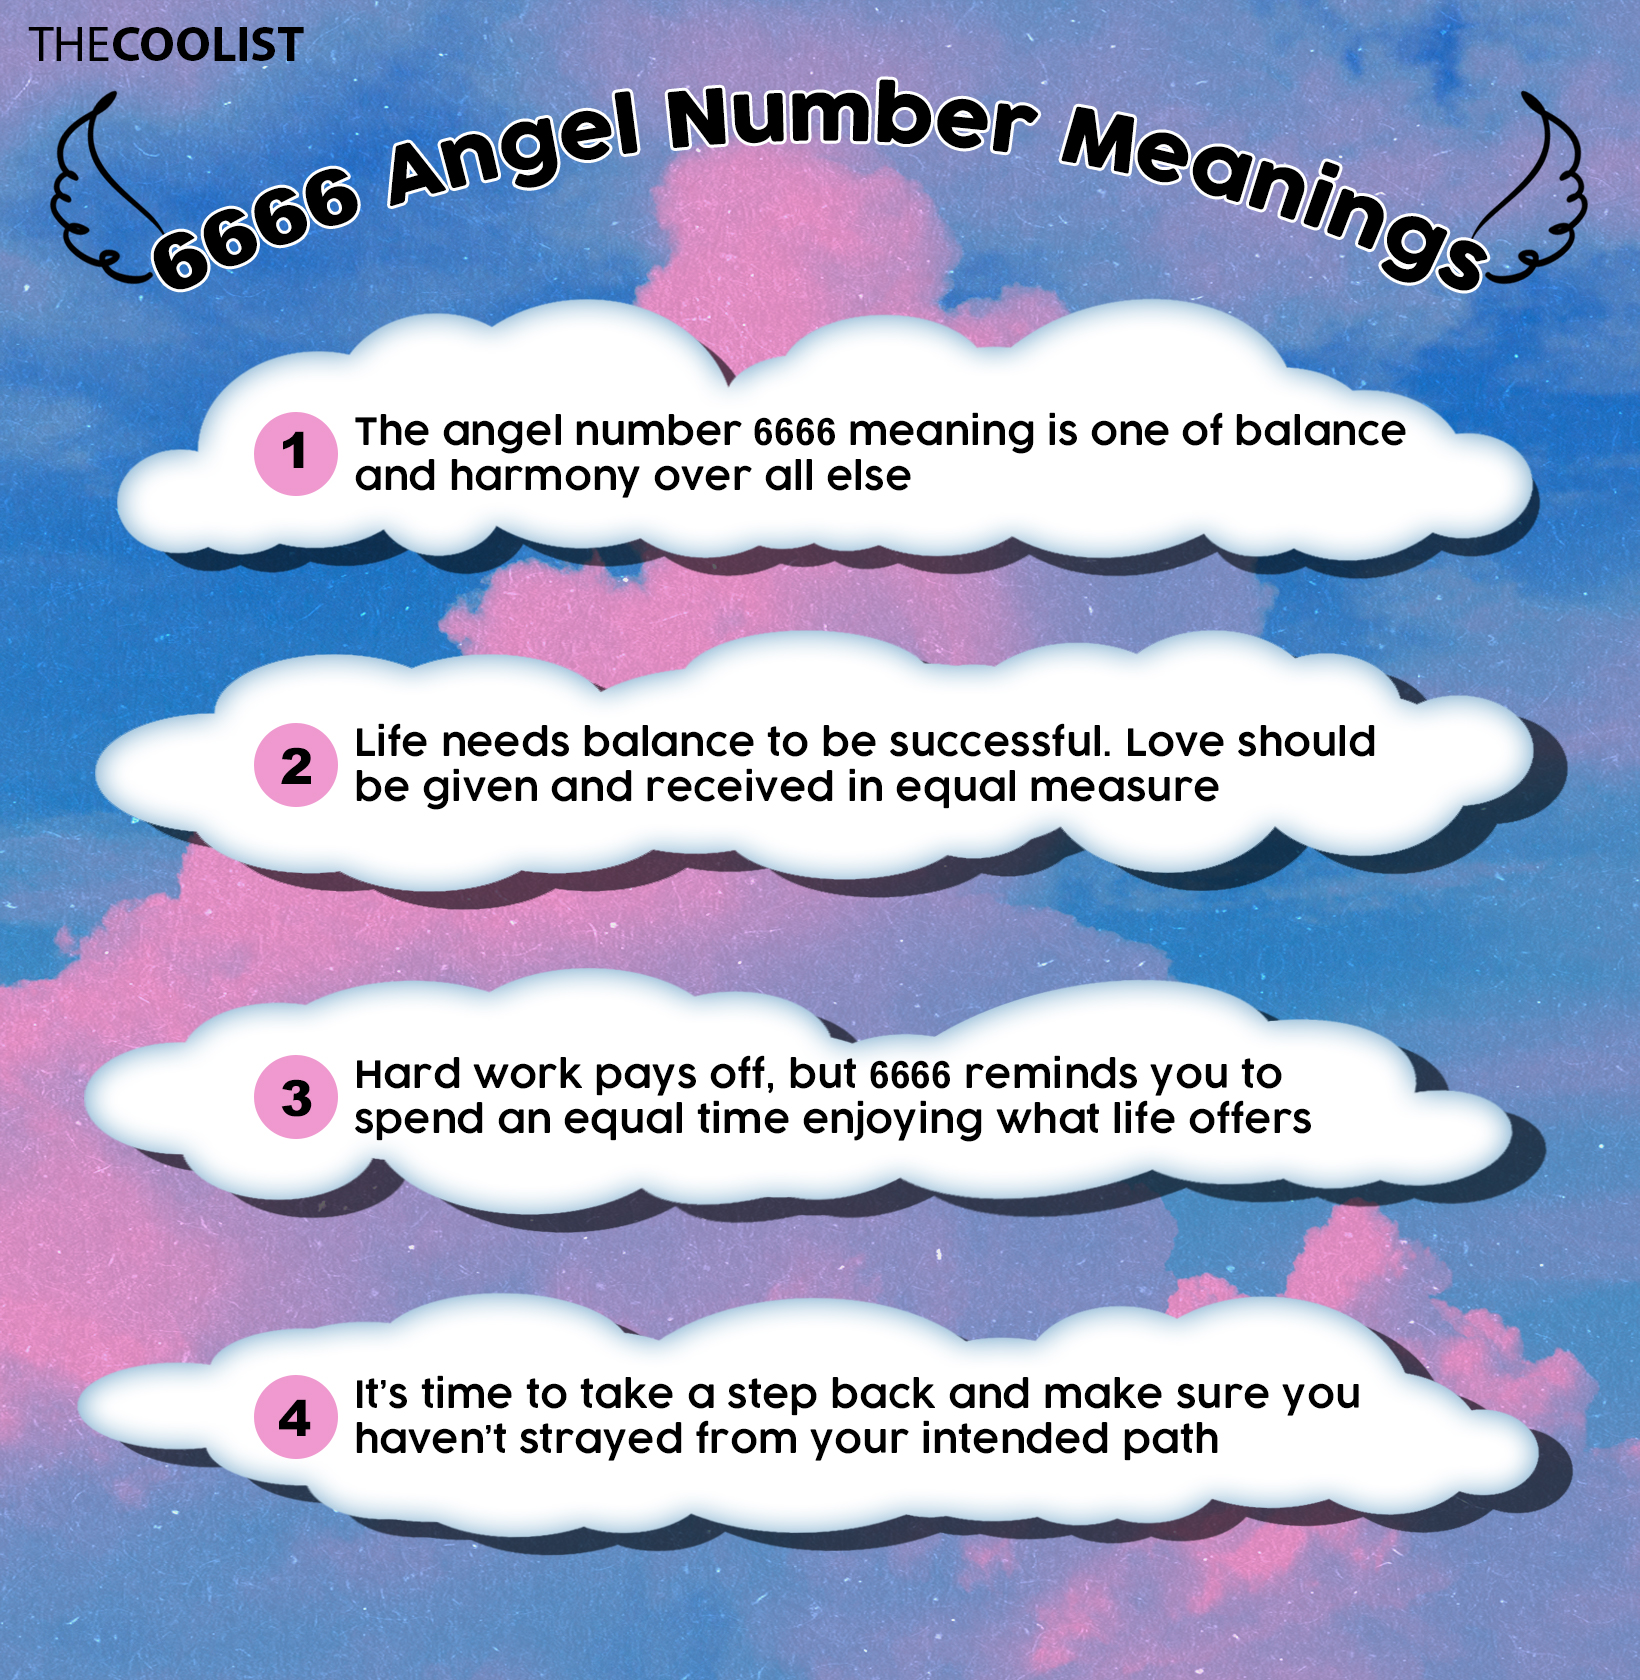  Numéro d'ange 6666 : Signification, signification, flamme jumelle et amour